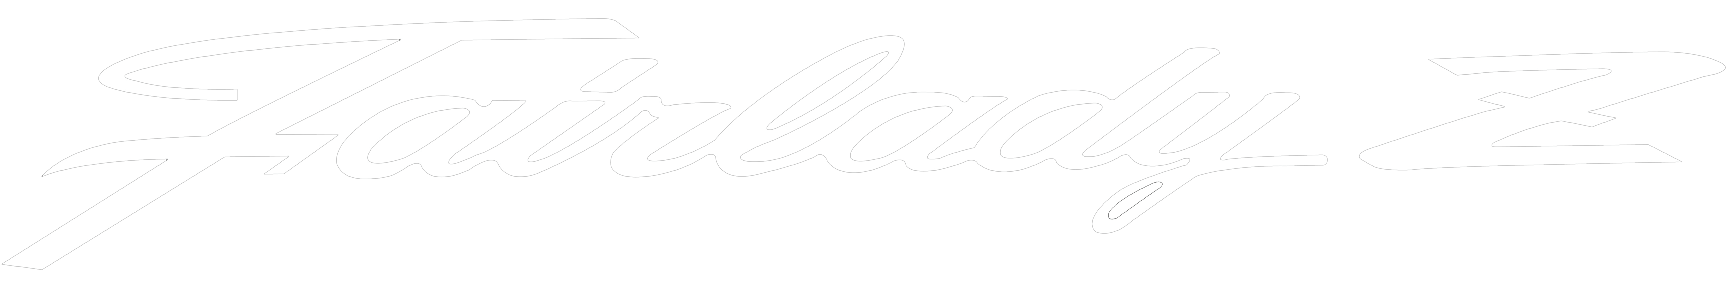 Fairlady Z Logo - FAIRLADY Z DECALS 350Z Forum, Nissan 370Z Tech Forums